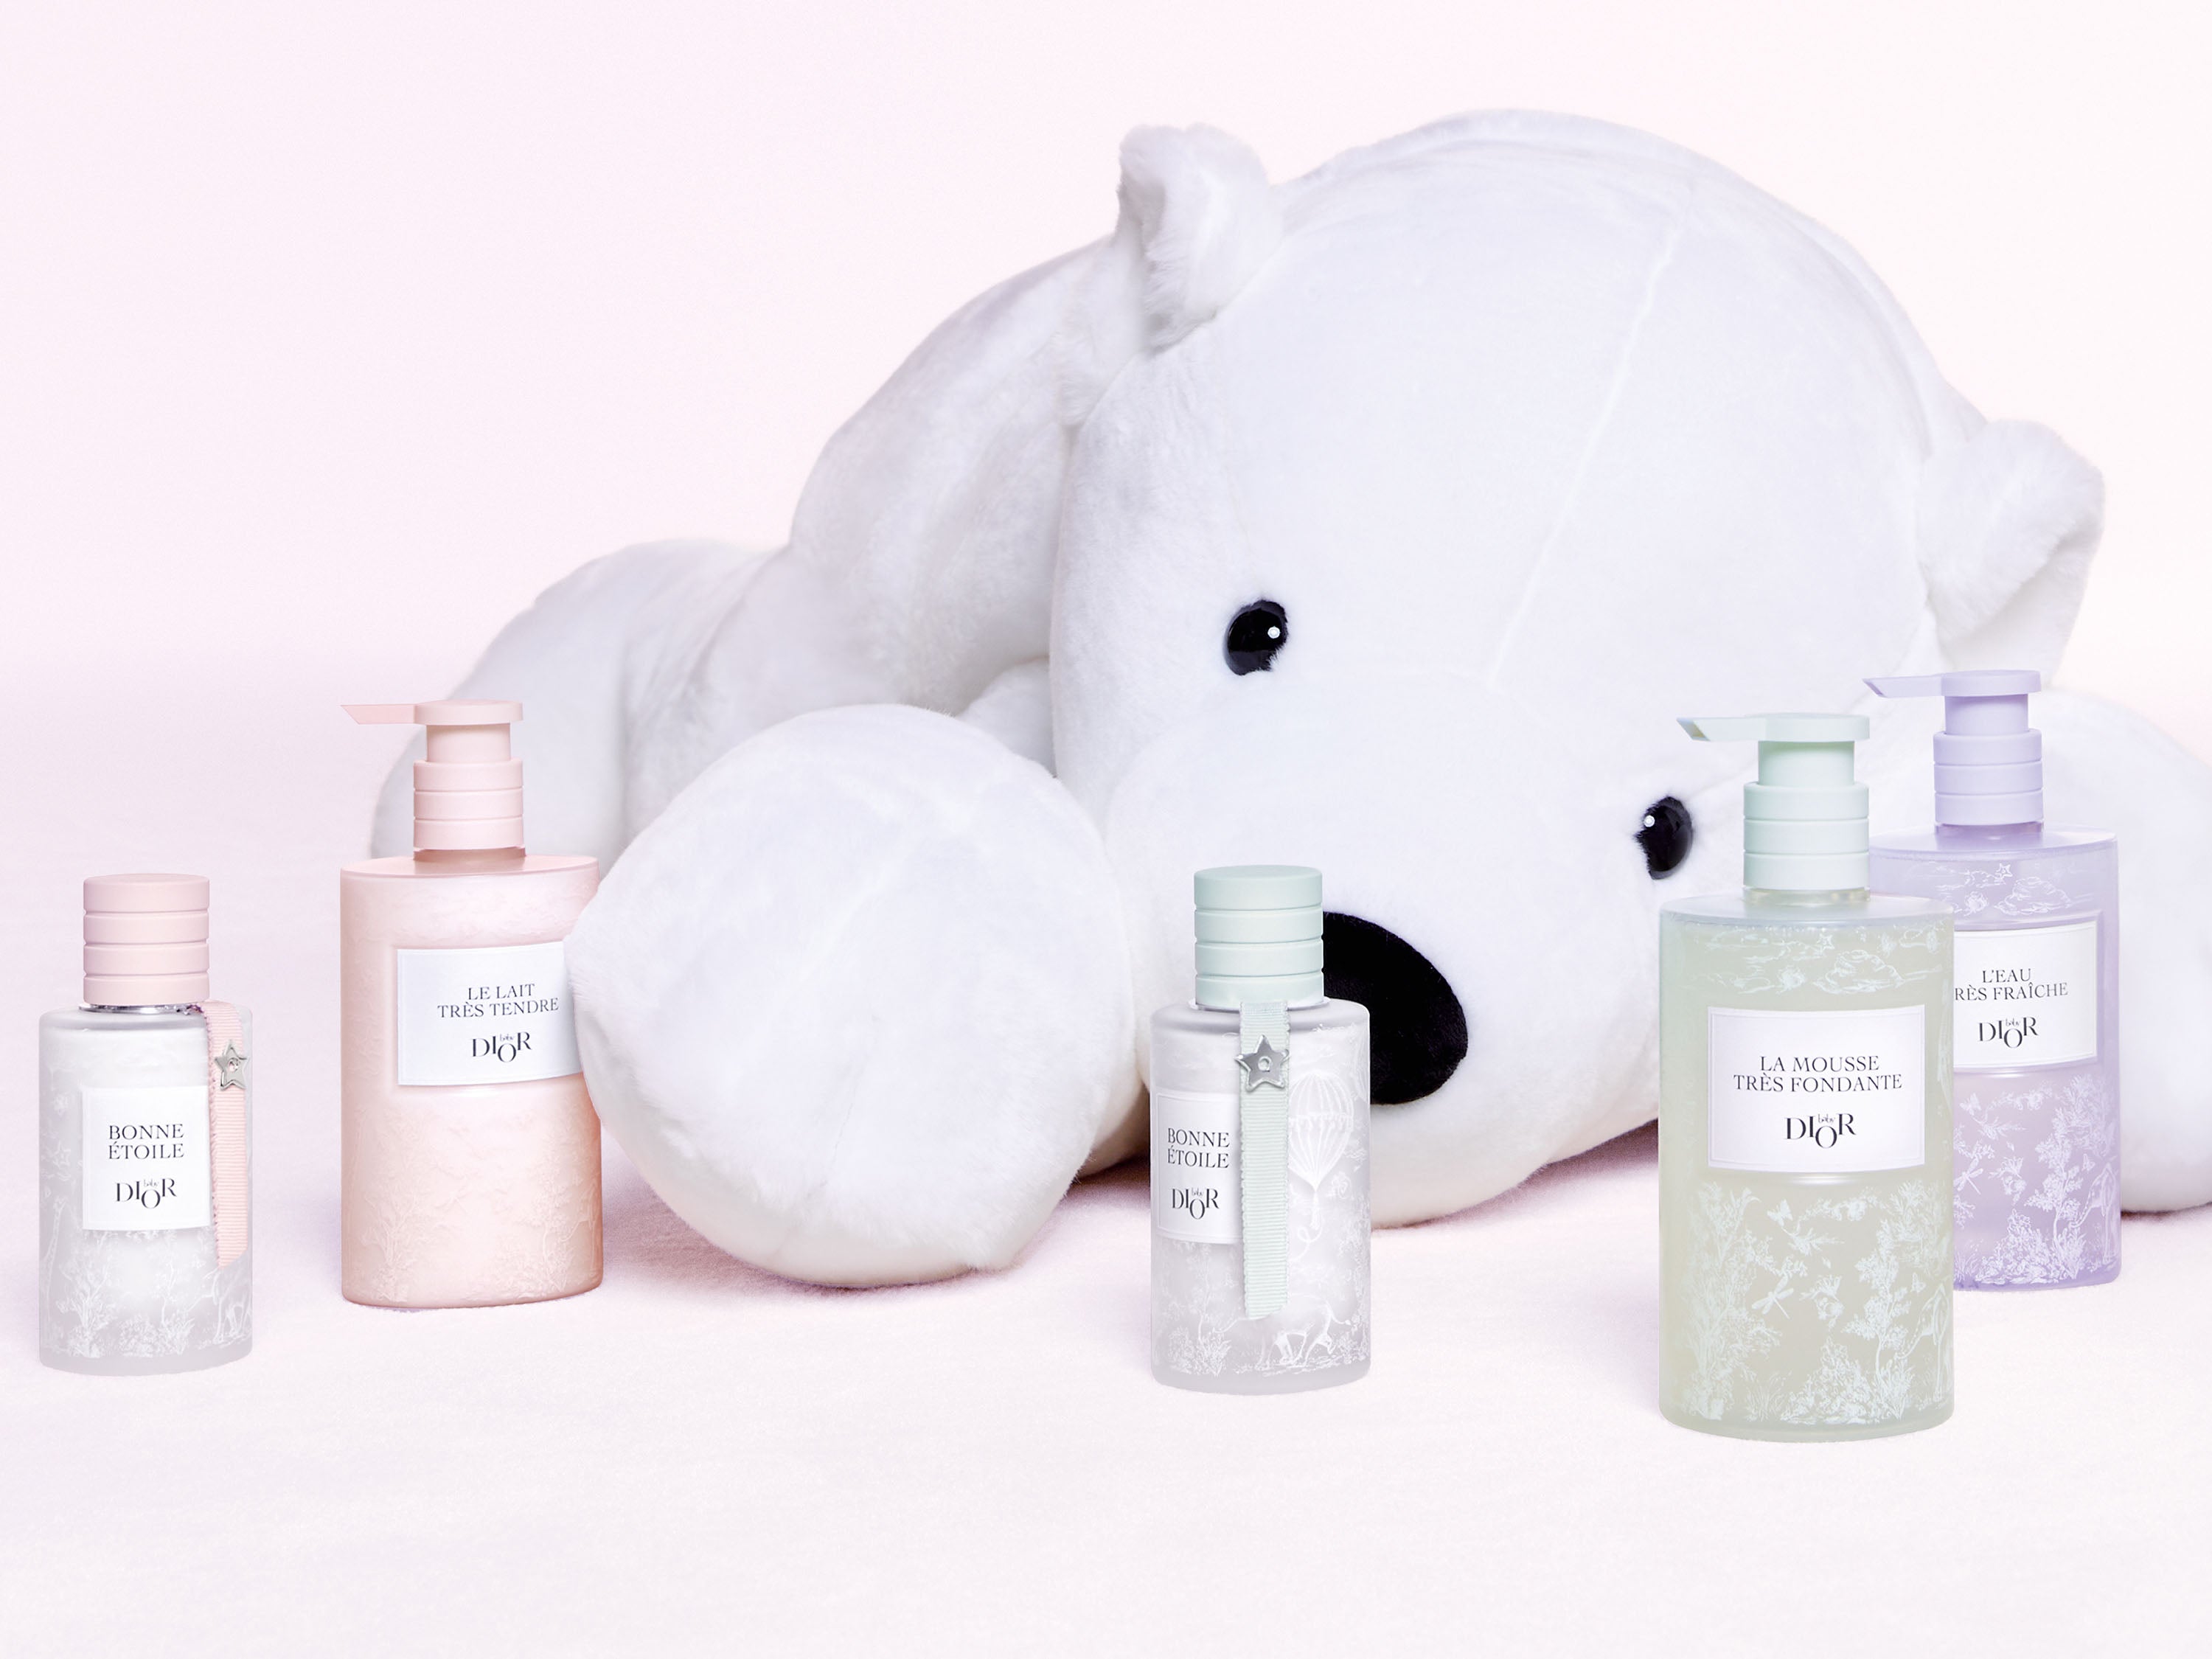 A picture of the white plush behind Baby Dior skincare products and Bonne Étoile eau de senteur.